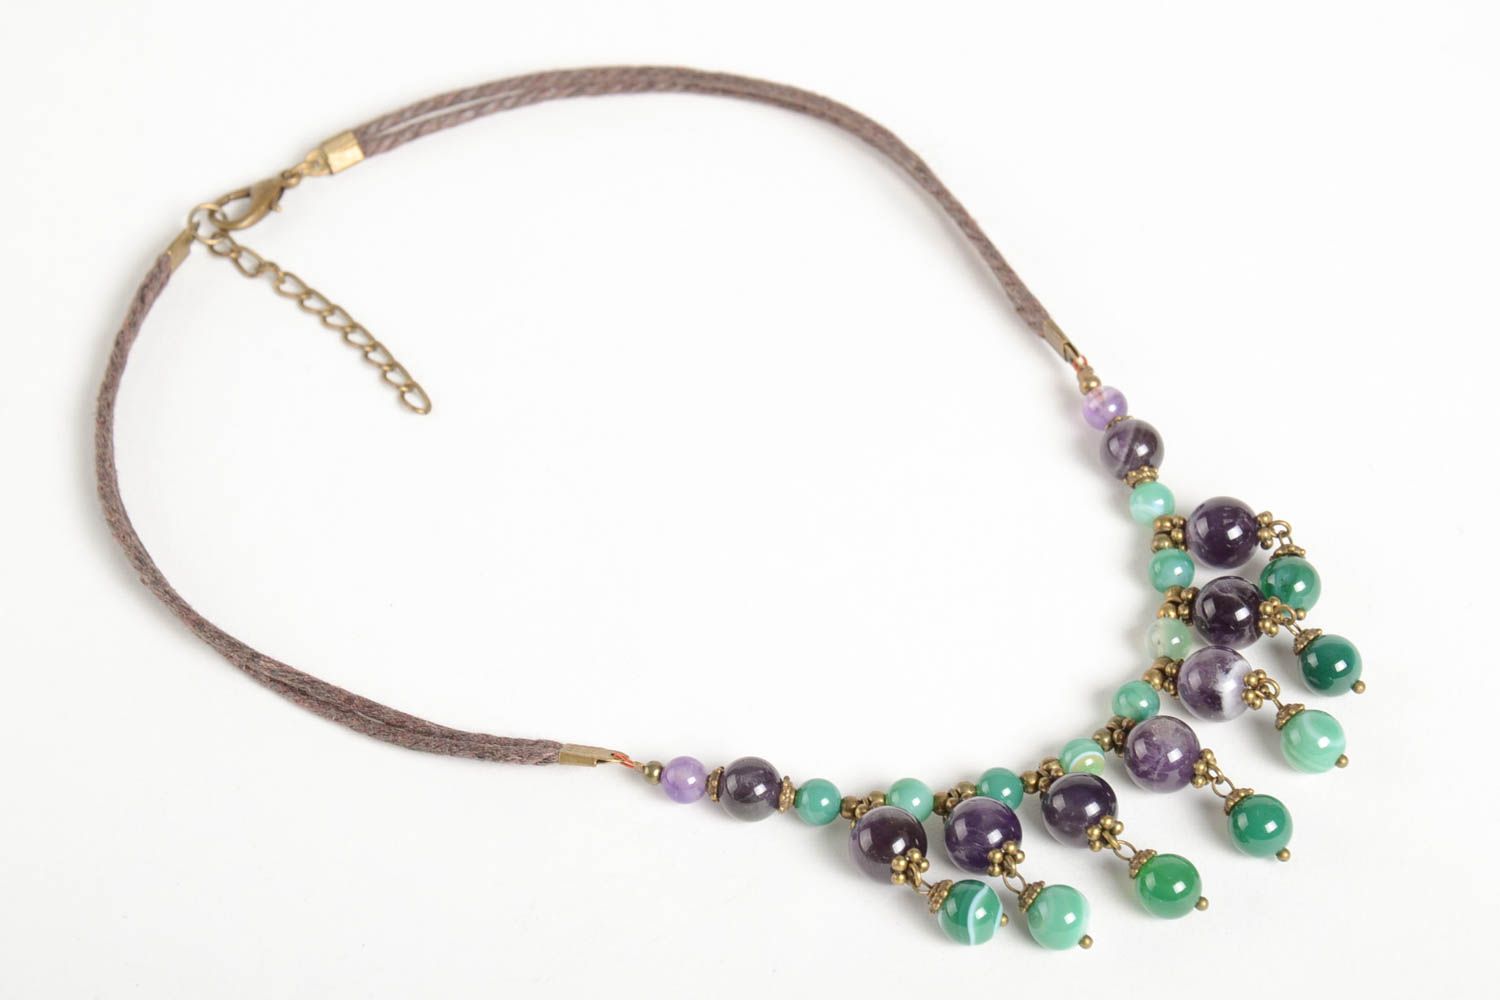 Handmade beaded elegant necklace stylish unusual jewelry natural stone necklace photo 5